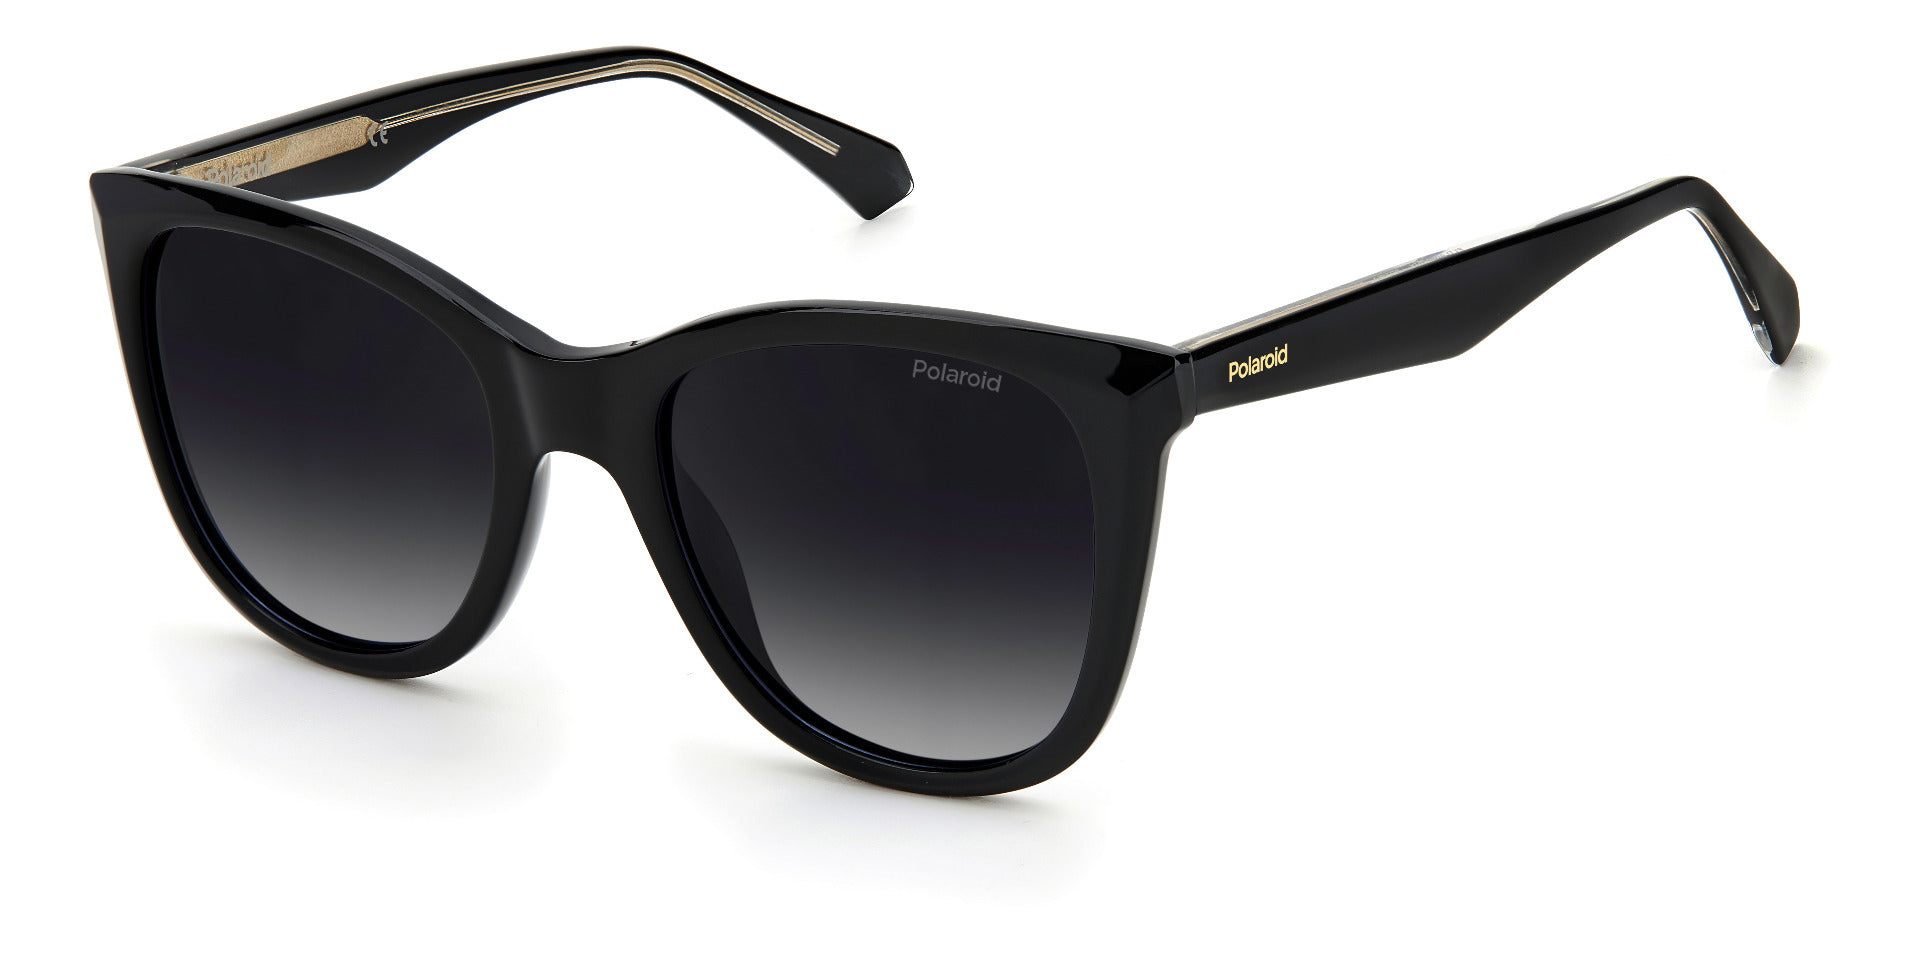 Polaroid Square Sunglasses Fashion Eyewear UK